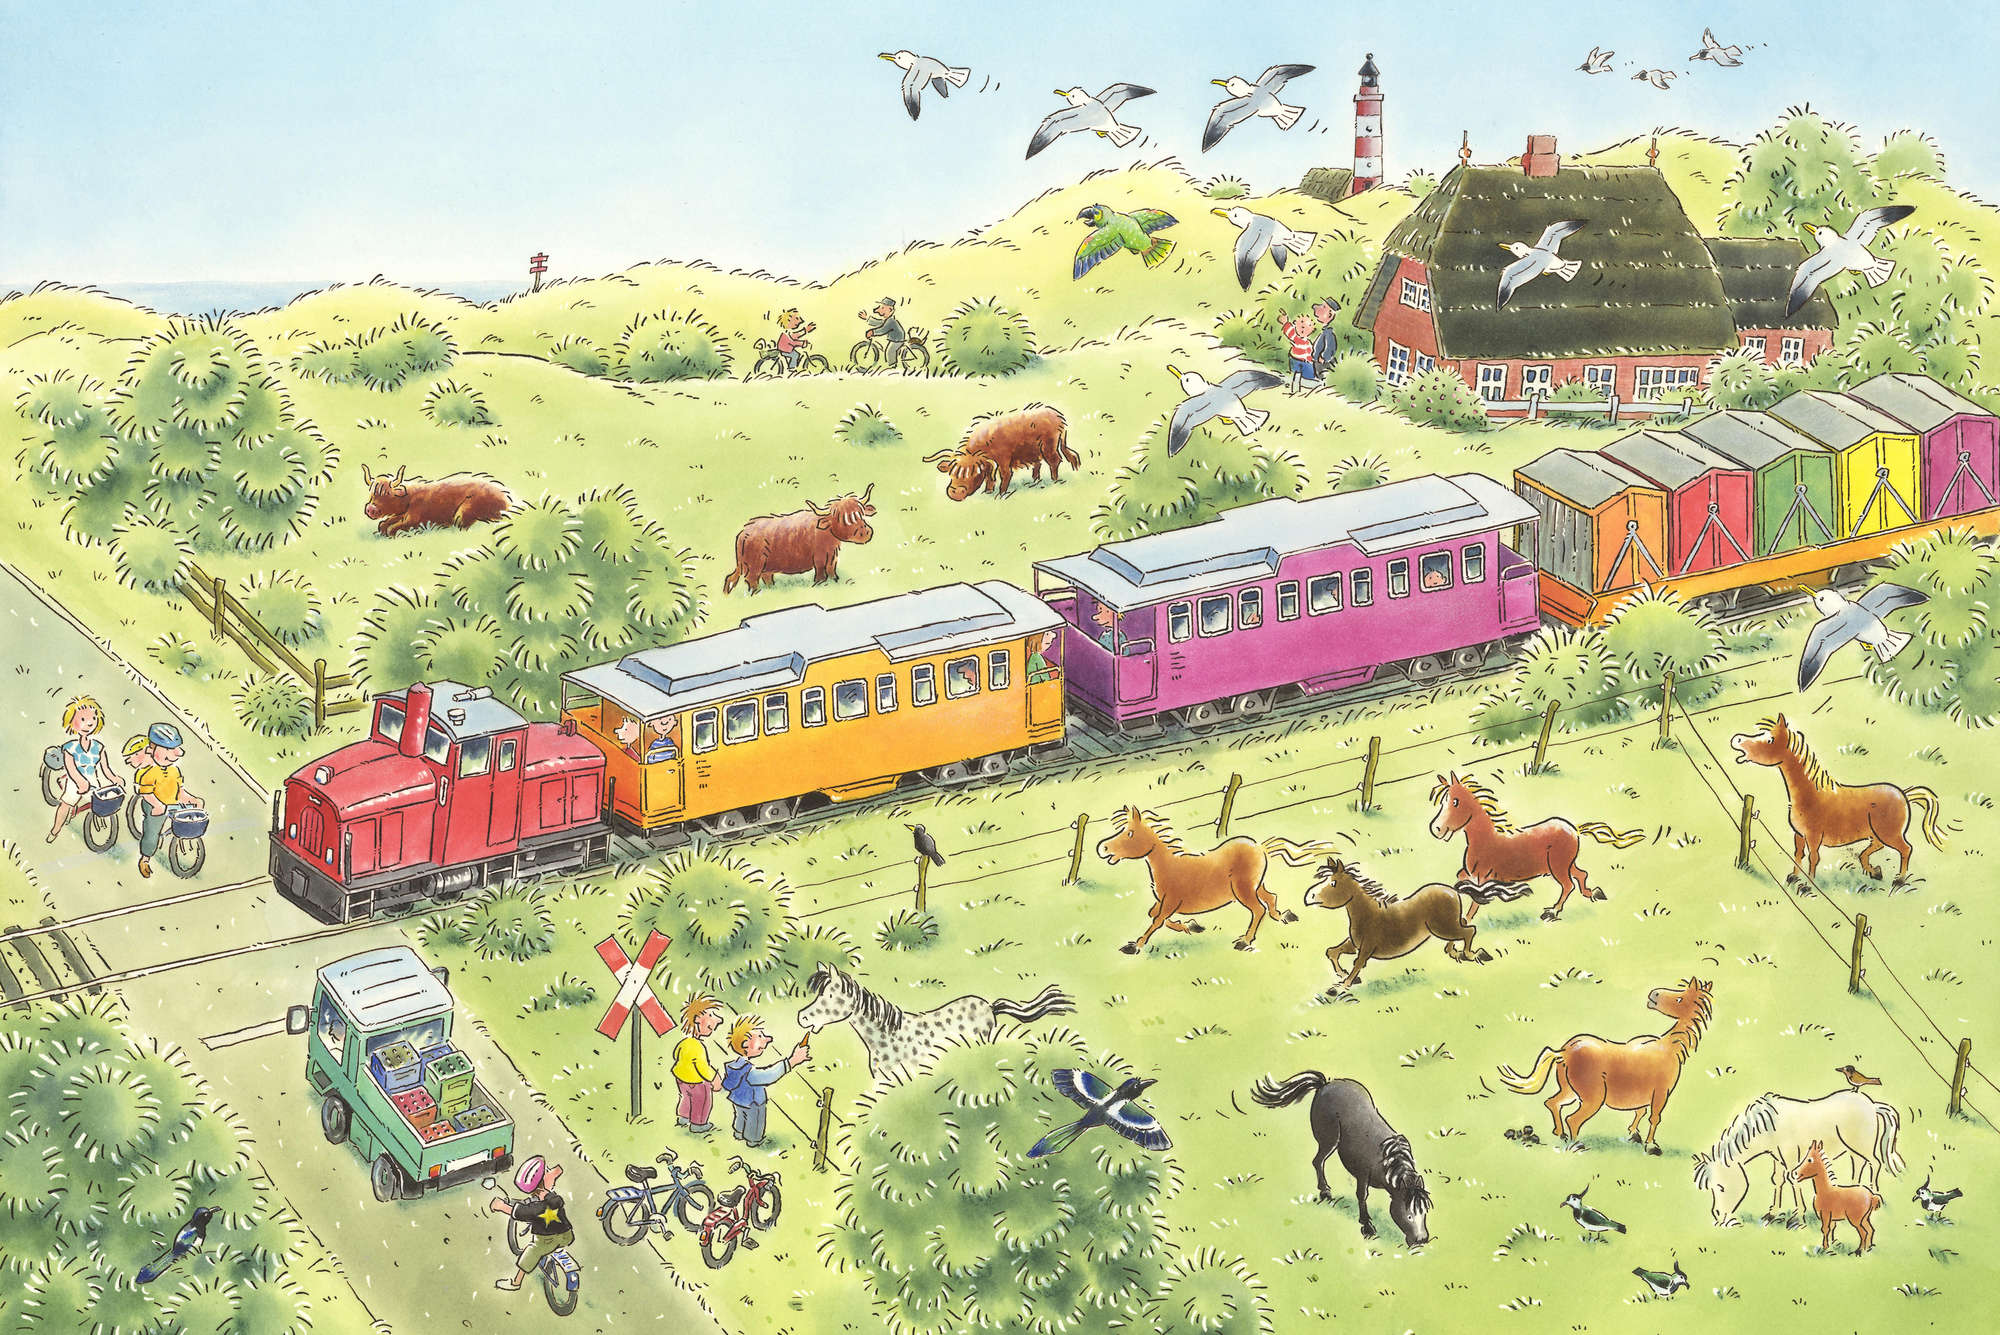             Papel pintado infantil Paso a nivel con tren y animales sobre vellón liso de primera calidad
        